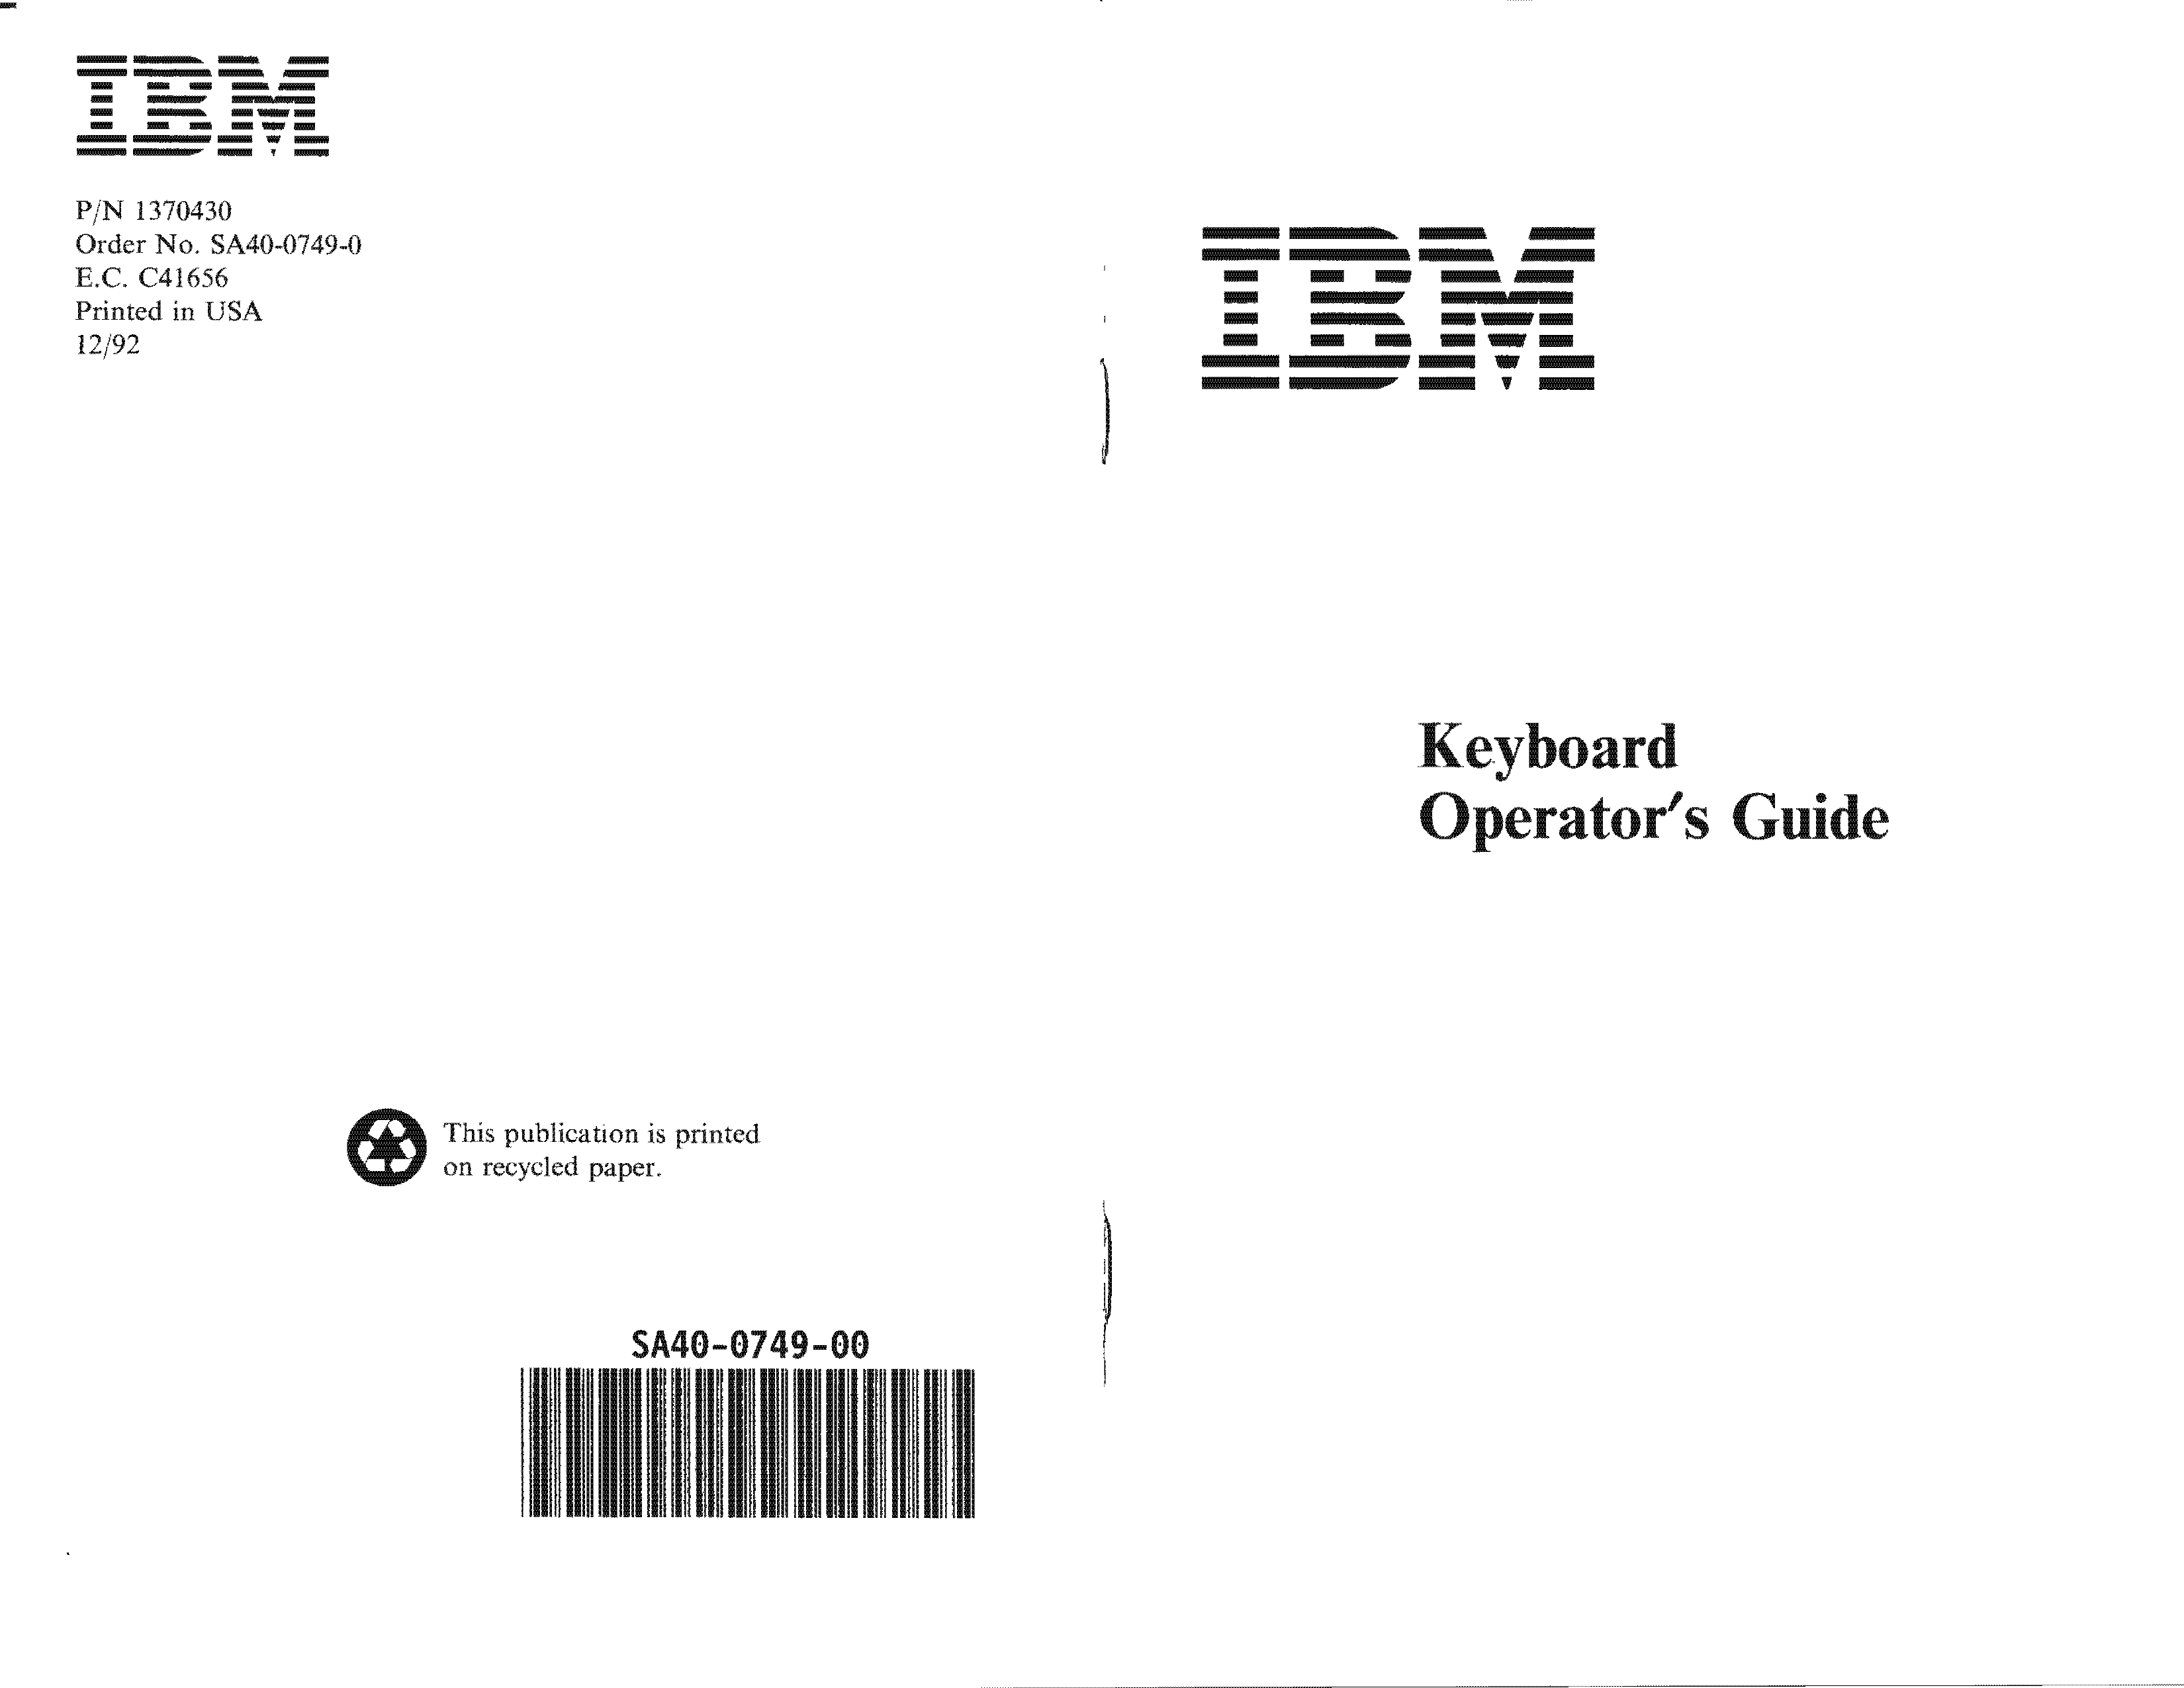 IBM_SA40-0749-0_M_M5-2_92_Page_1_Page_1.png